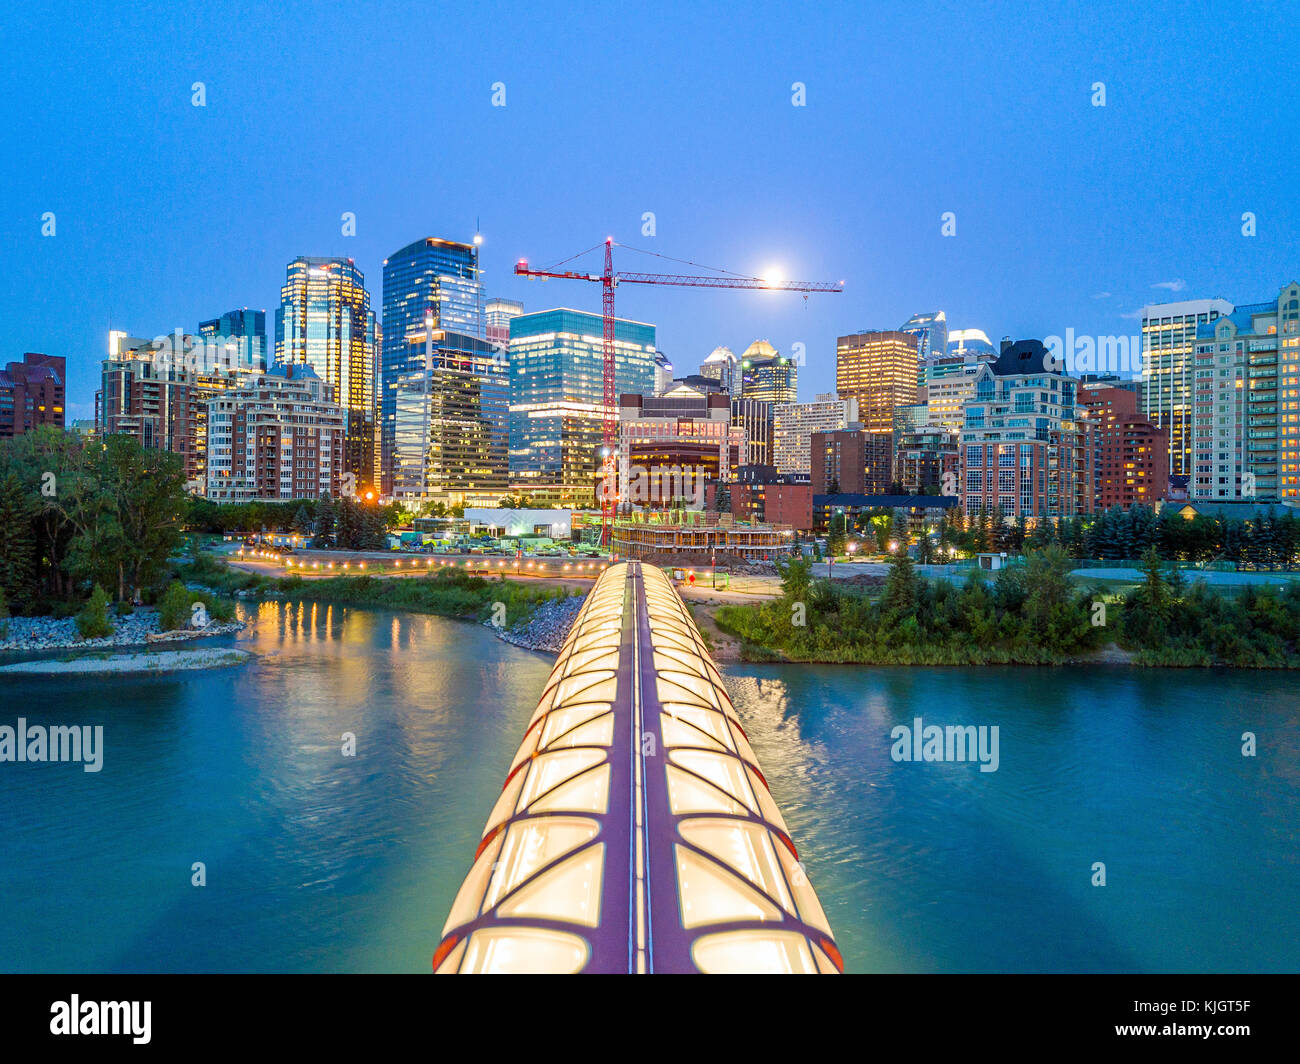 Le centre-ville de Calgary avec iluminated pont de la paix et la pleine lune, Alberta, Canada Banque D'Images